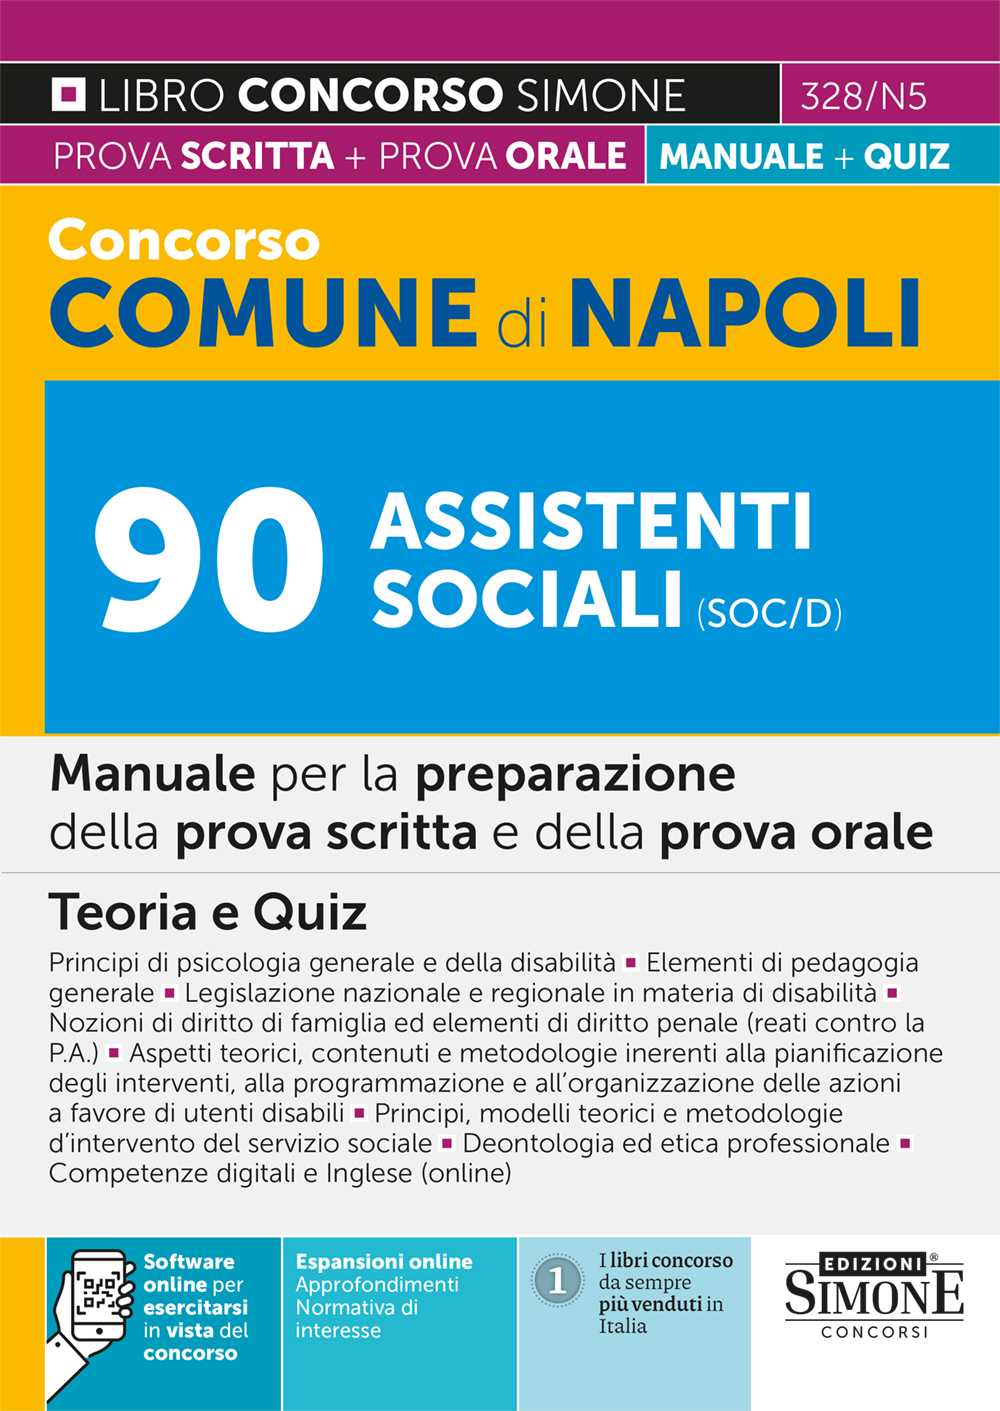 Concorso Comune di Napoli 90 Assistenti sociali SOC/D – Manuale - 328/N5